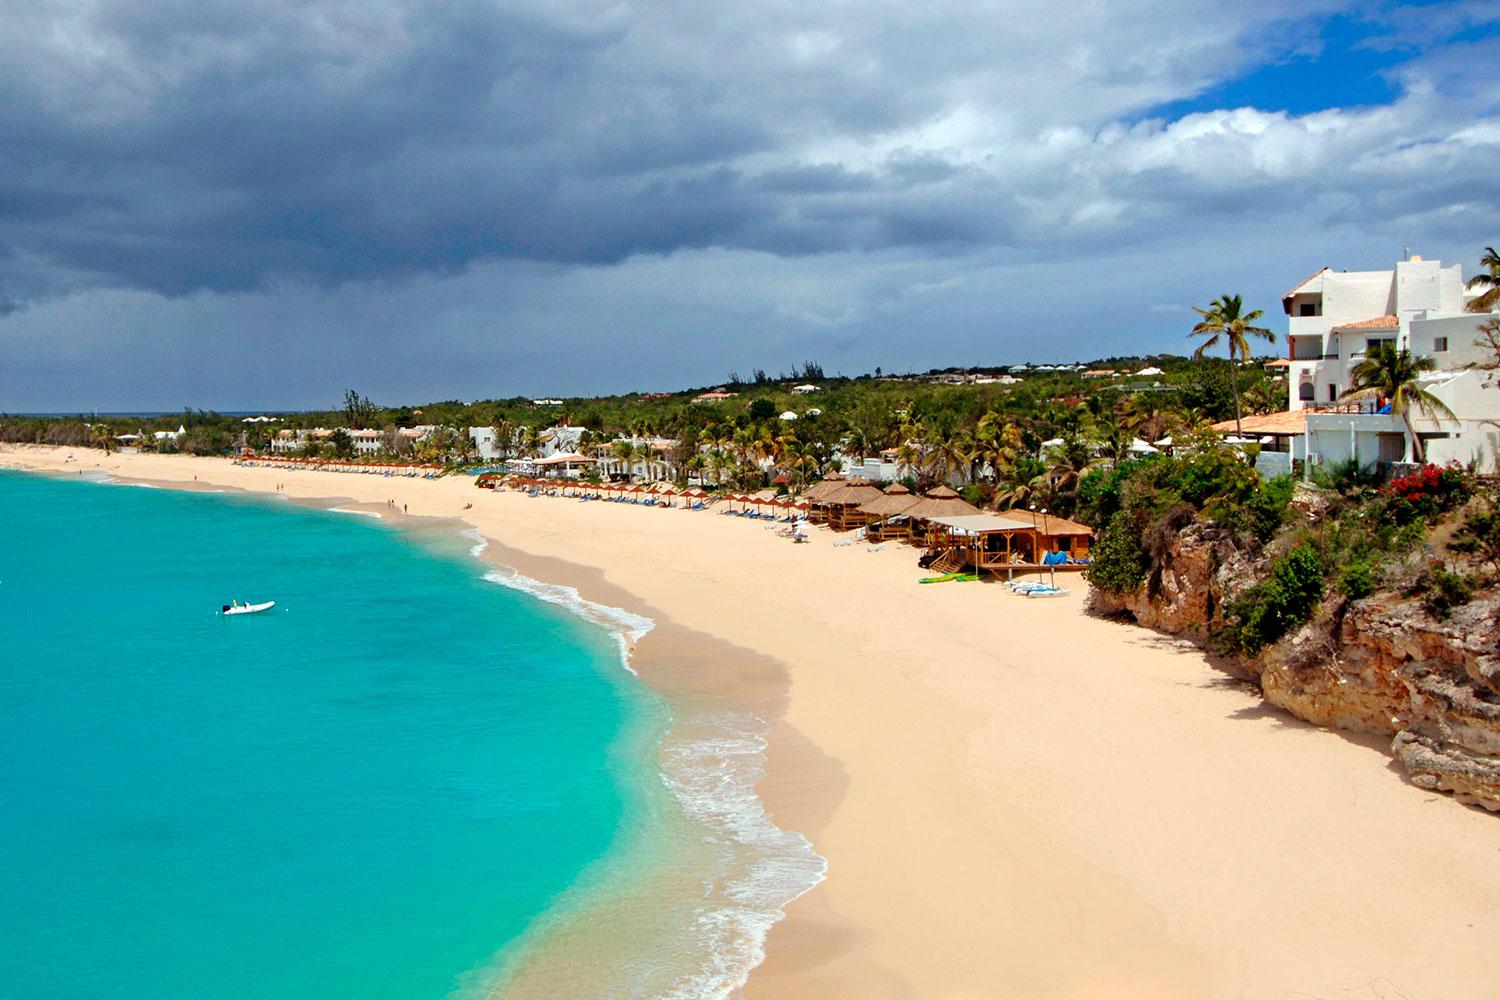 BAIE LONGUE, ST MARTIN En favorit bland världens rika är denna strand på den franska delen av karibiska ön St Martin. Ovanför stranden ligger många exklusiva hus värda åtskilliga miljoner. Mariah Carey, Eddie Murphy och Courteney Cox hör till kändisarna som semestrat här.